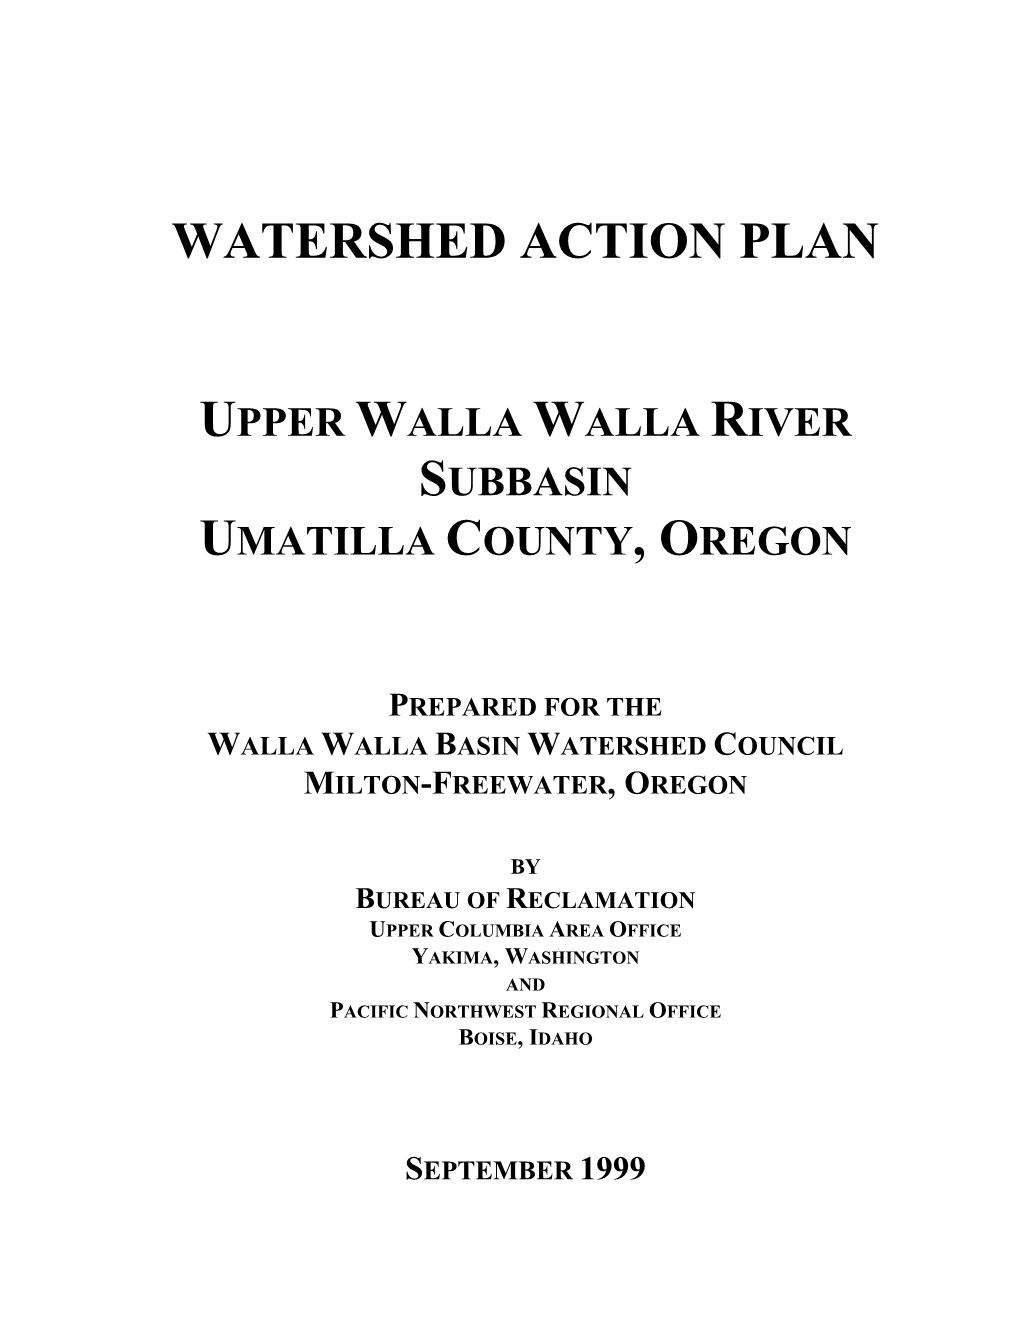 Watershed Action Plan Upper Walla Walla River Subbasin Umatilla County